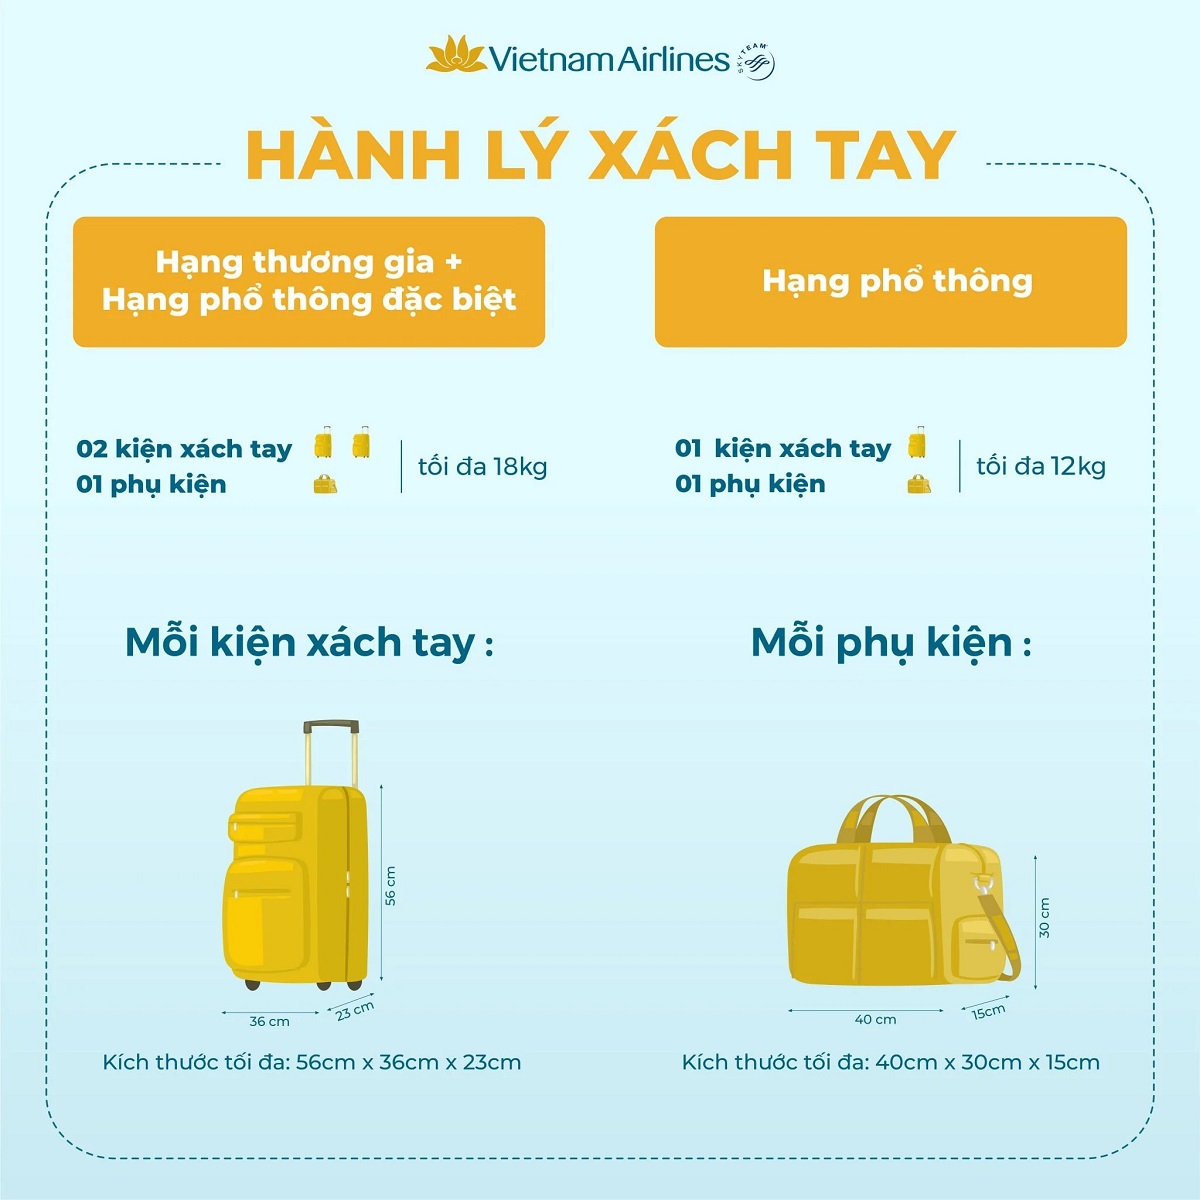 Hành lý xách tay Vietnam Airlines